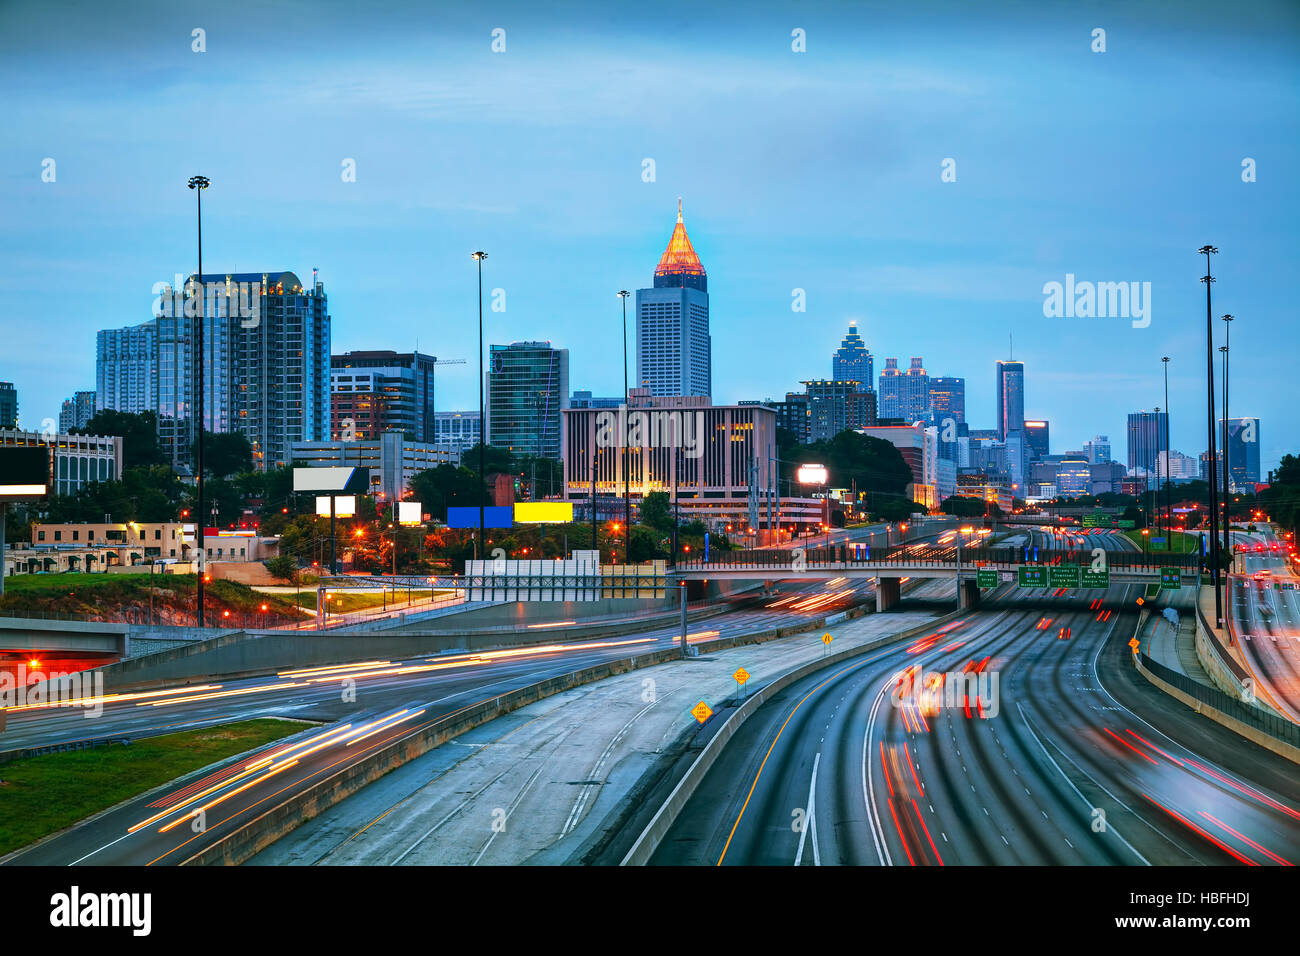 Downtown Atlanta, Georgia Stock Photo